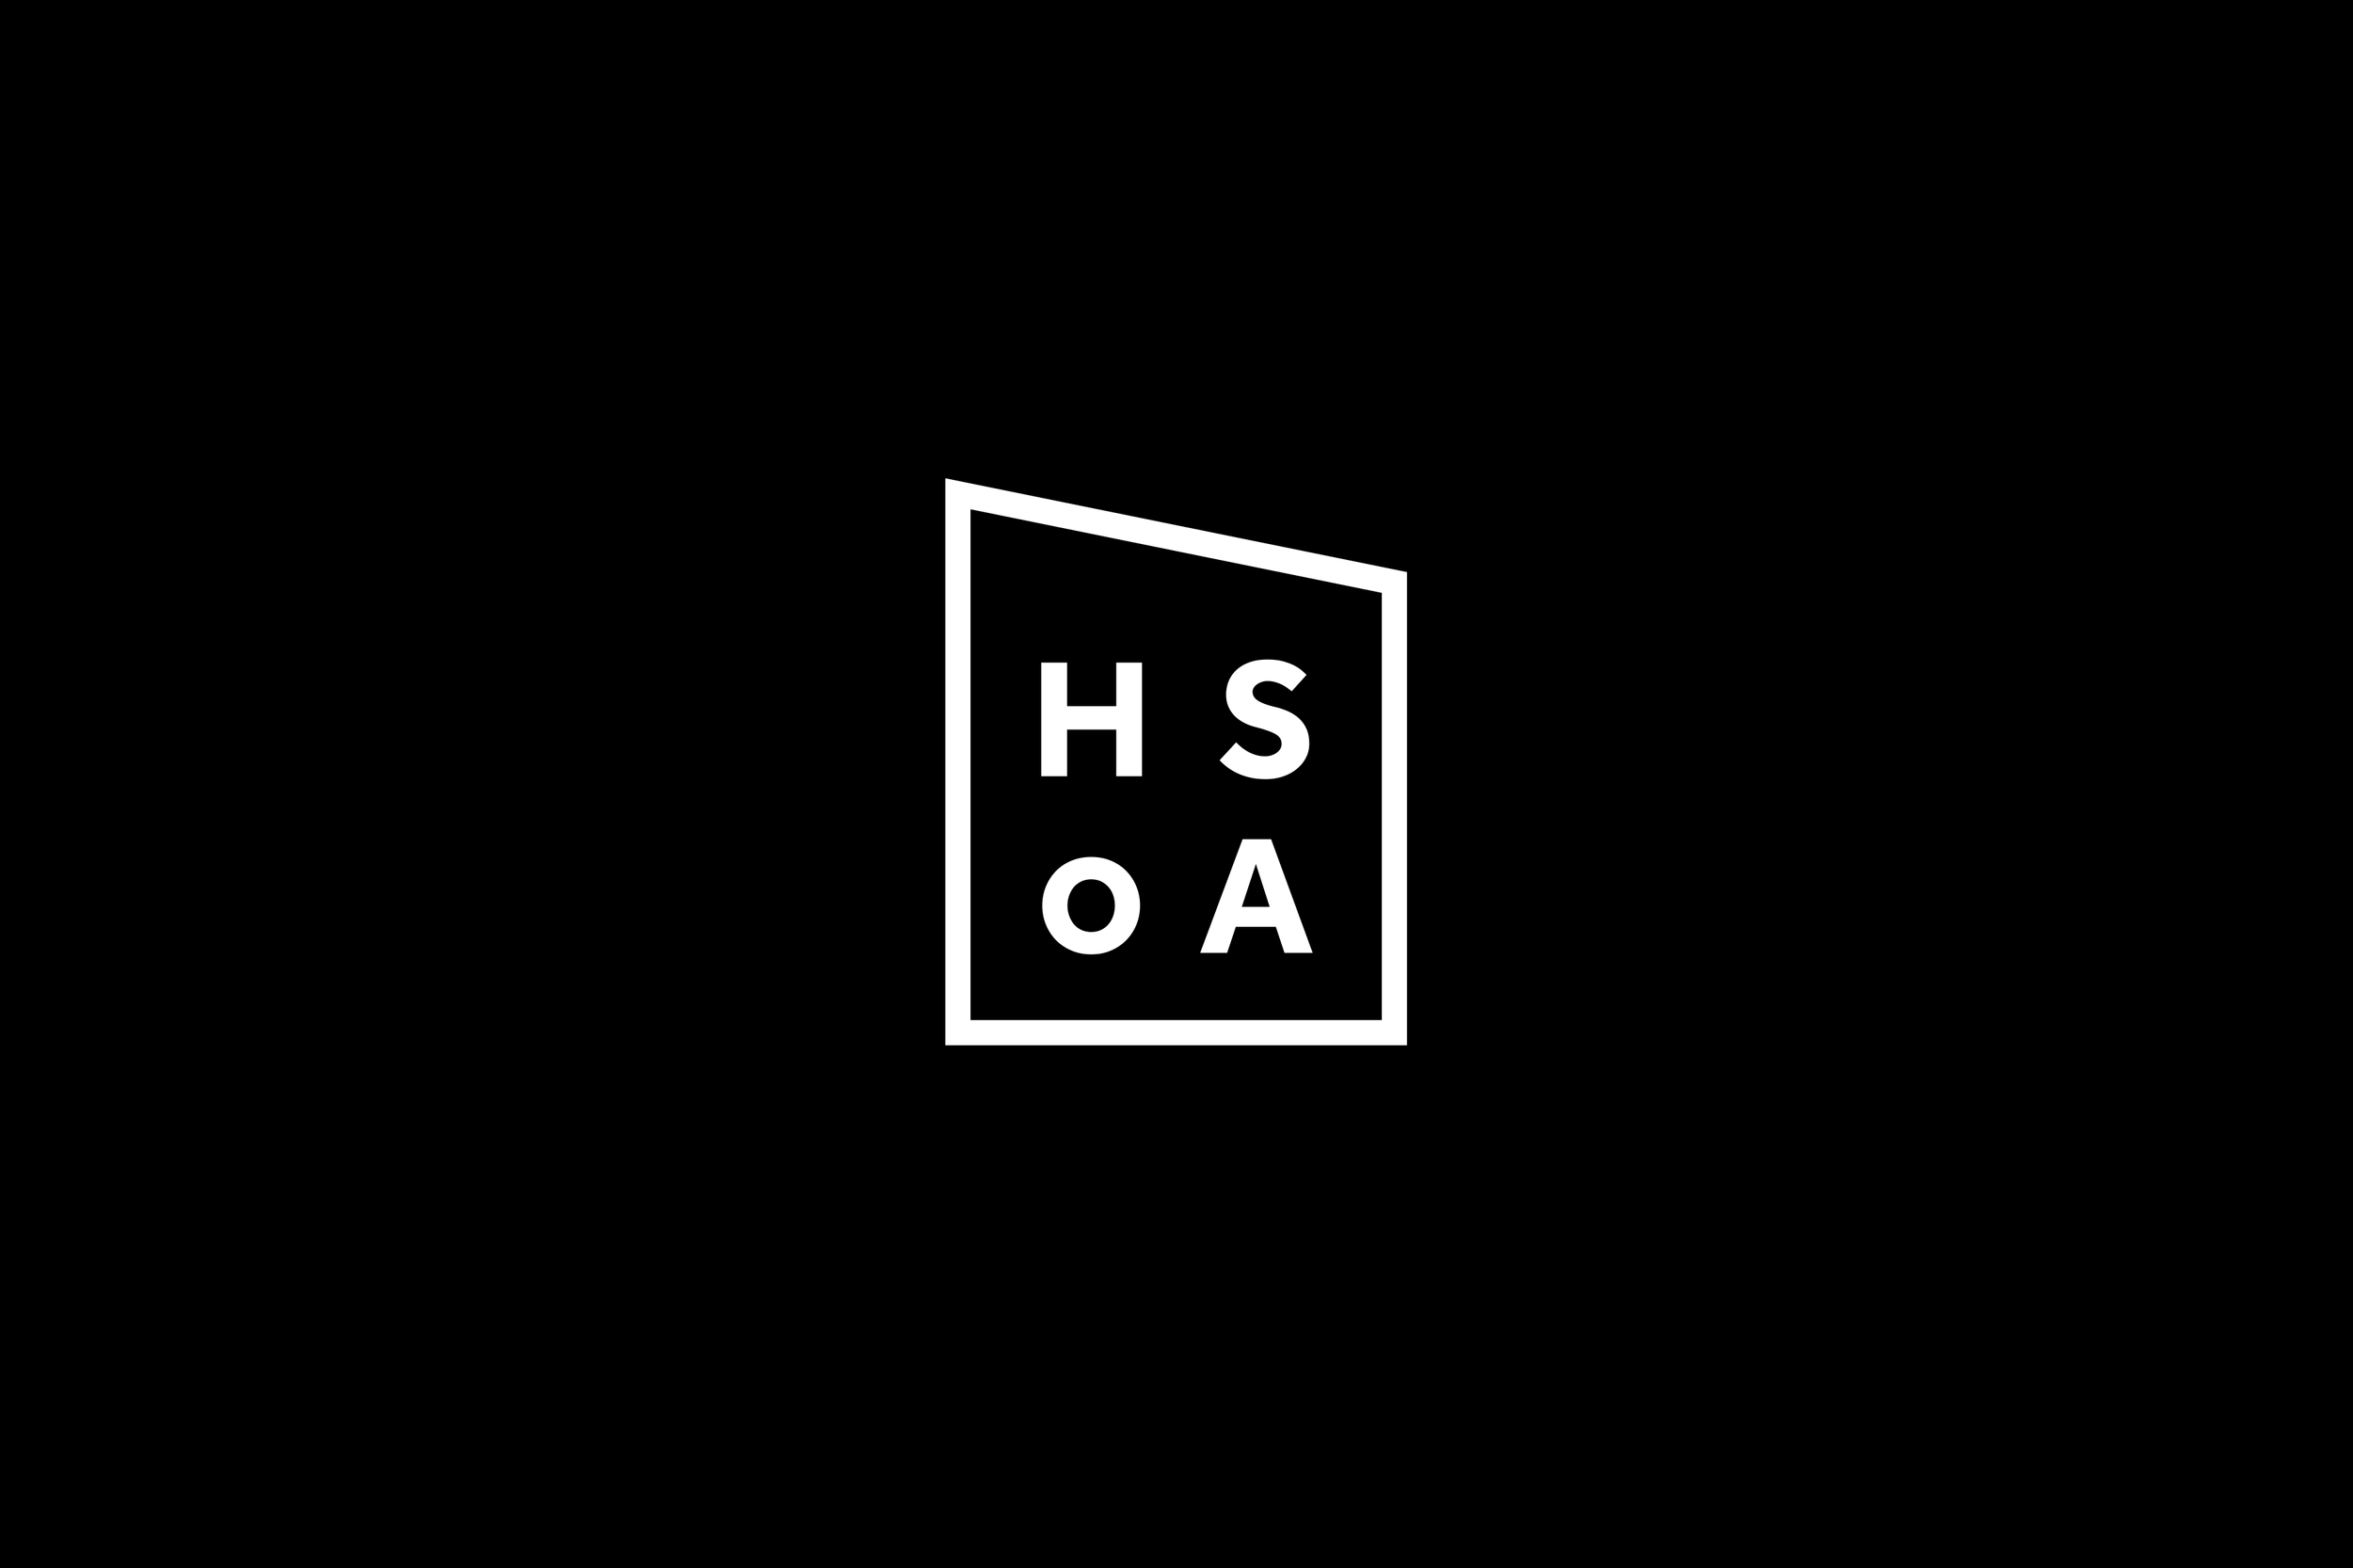 hsoa-logo.png